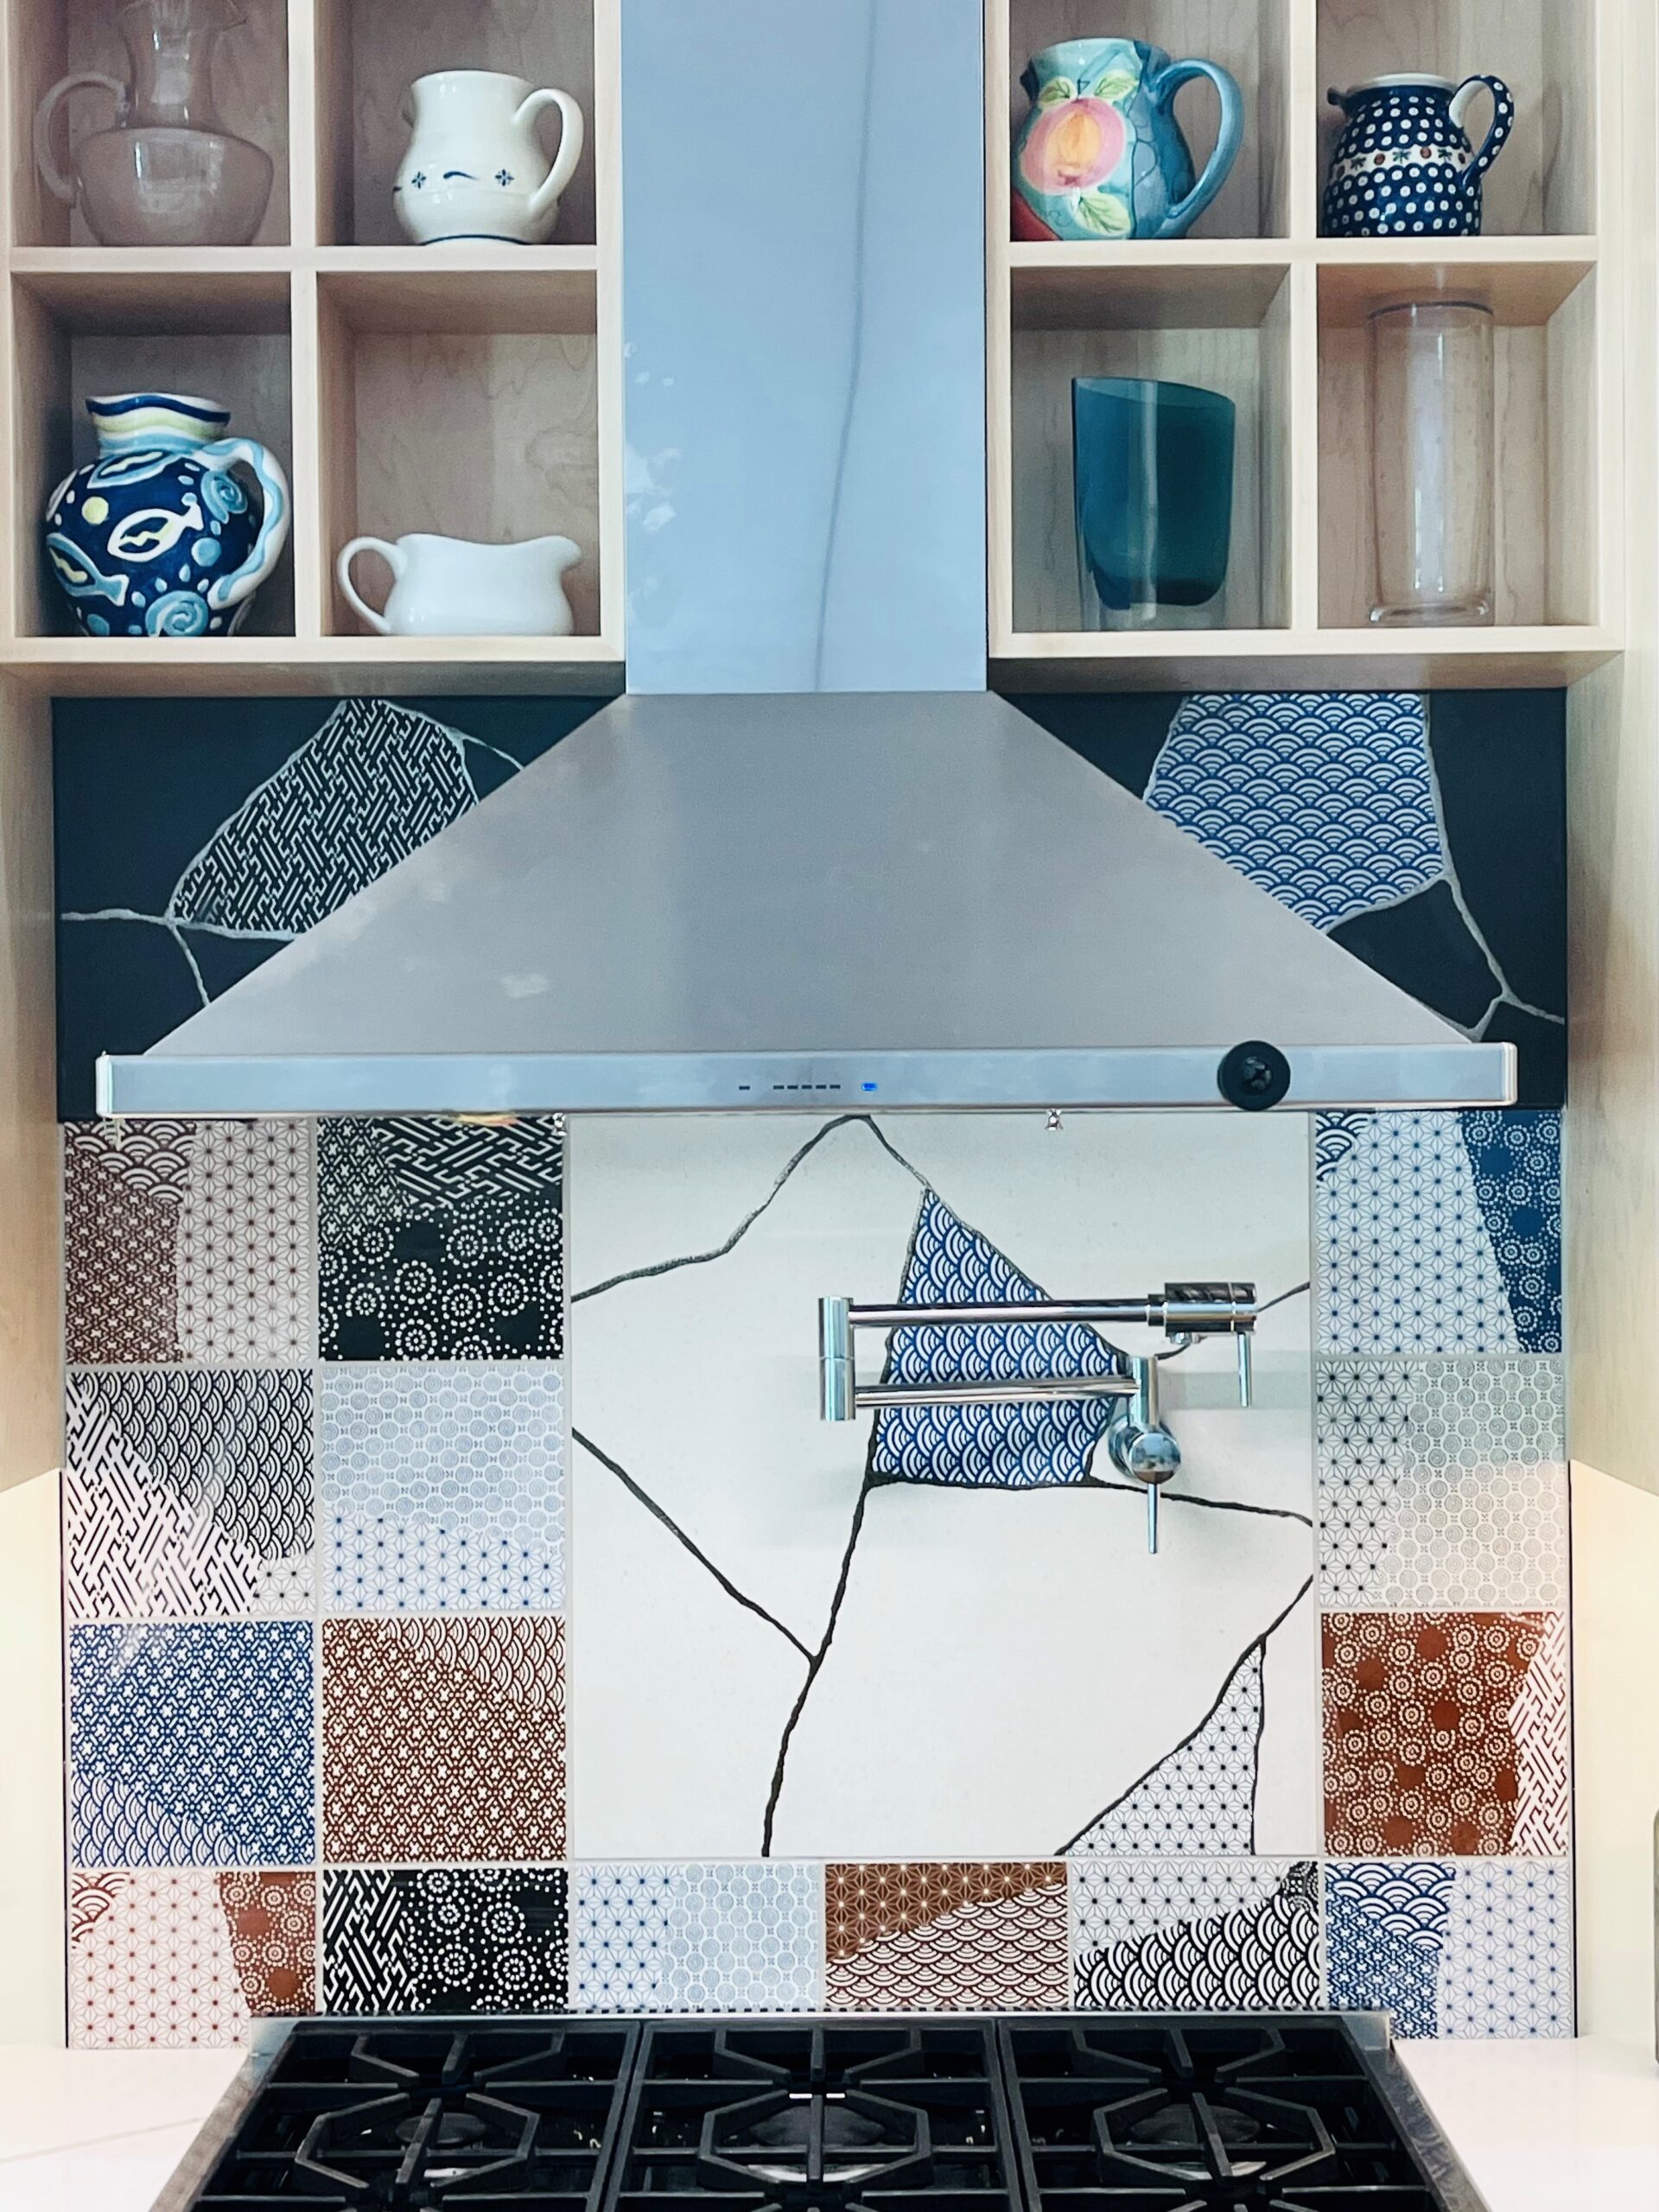 Colorful Patchwork Tile Backsplash in a Modern Kitchen